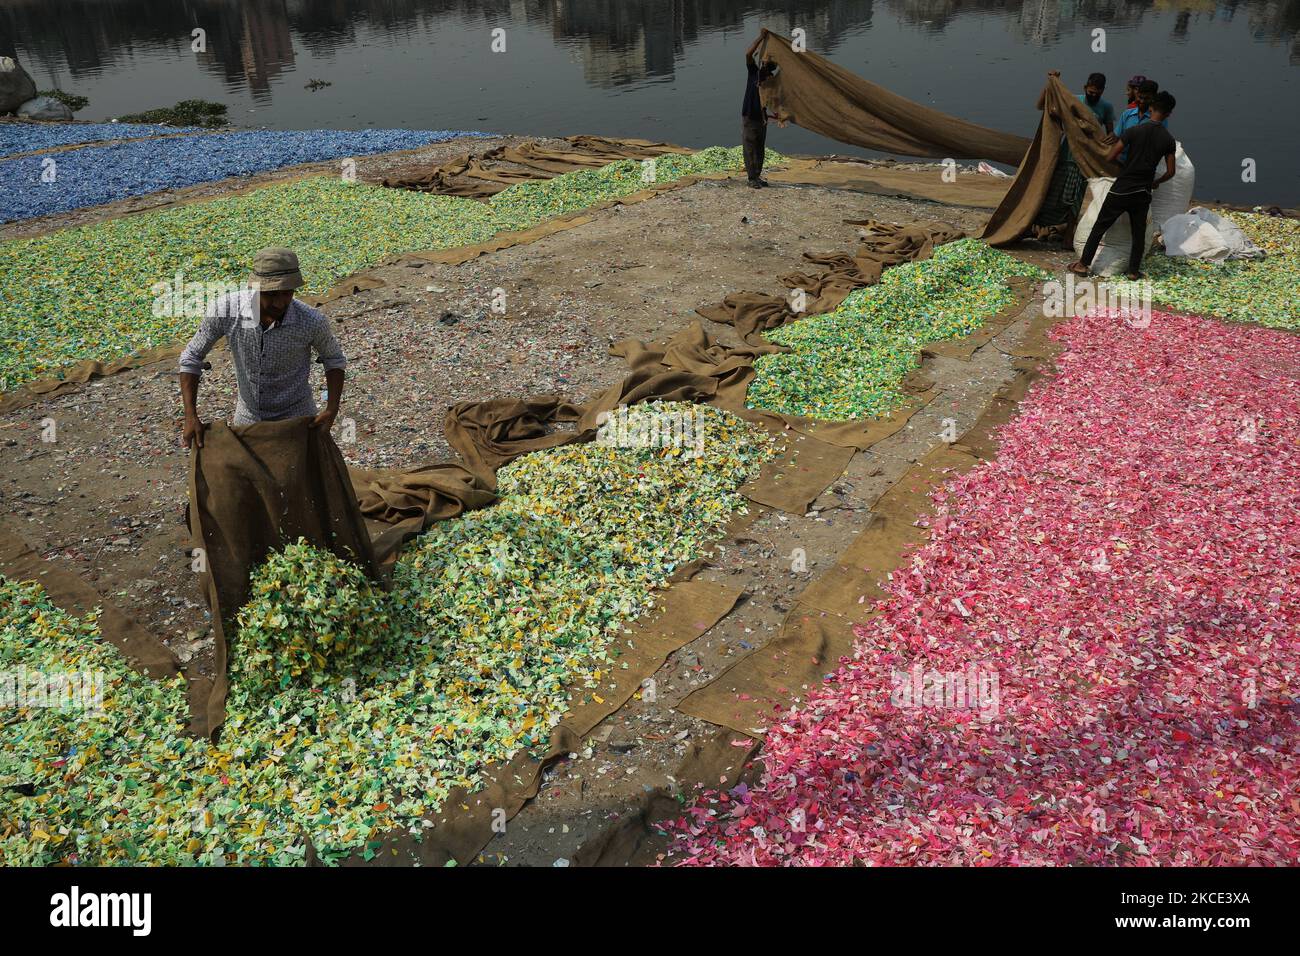 Los trabajadores esparcieron virutas de plástico recicladas después de lavarlas en el río Buriganga, en Dhaka, Bangladesh, el 05 de mayo de 2021. El río Buriganga, que fluye por la ciudad de Dhaka, es ahora uno de los ríos más contaminados del mundo debido al vertimiento desenfrenado de desechos humanos e industriales. (Foto de Syed Mahamudur Rahman/NurPhoto) Foto de stock